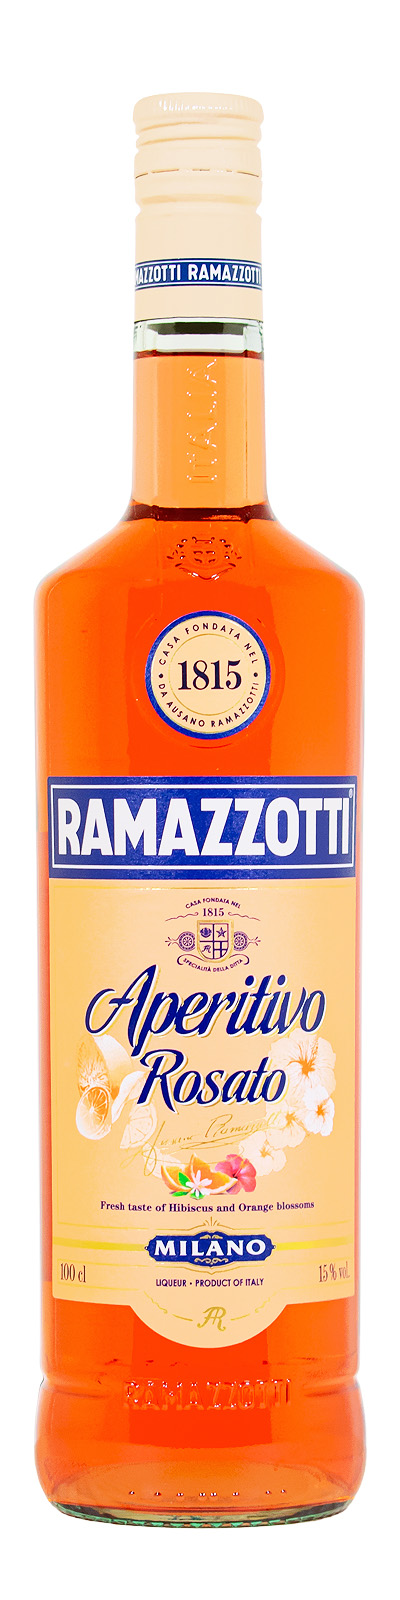 Ramazzotti Aperitivo kaufen Rosato günstig (1L)